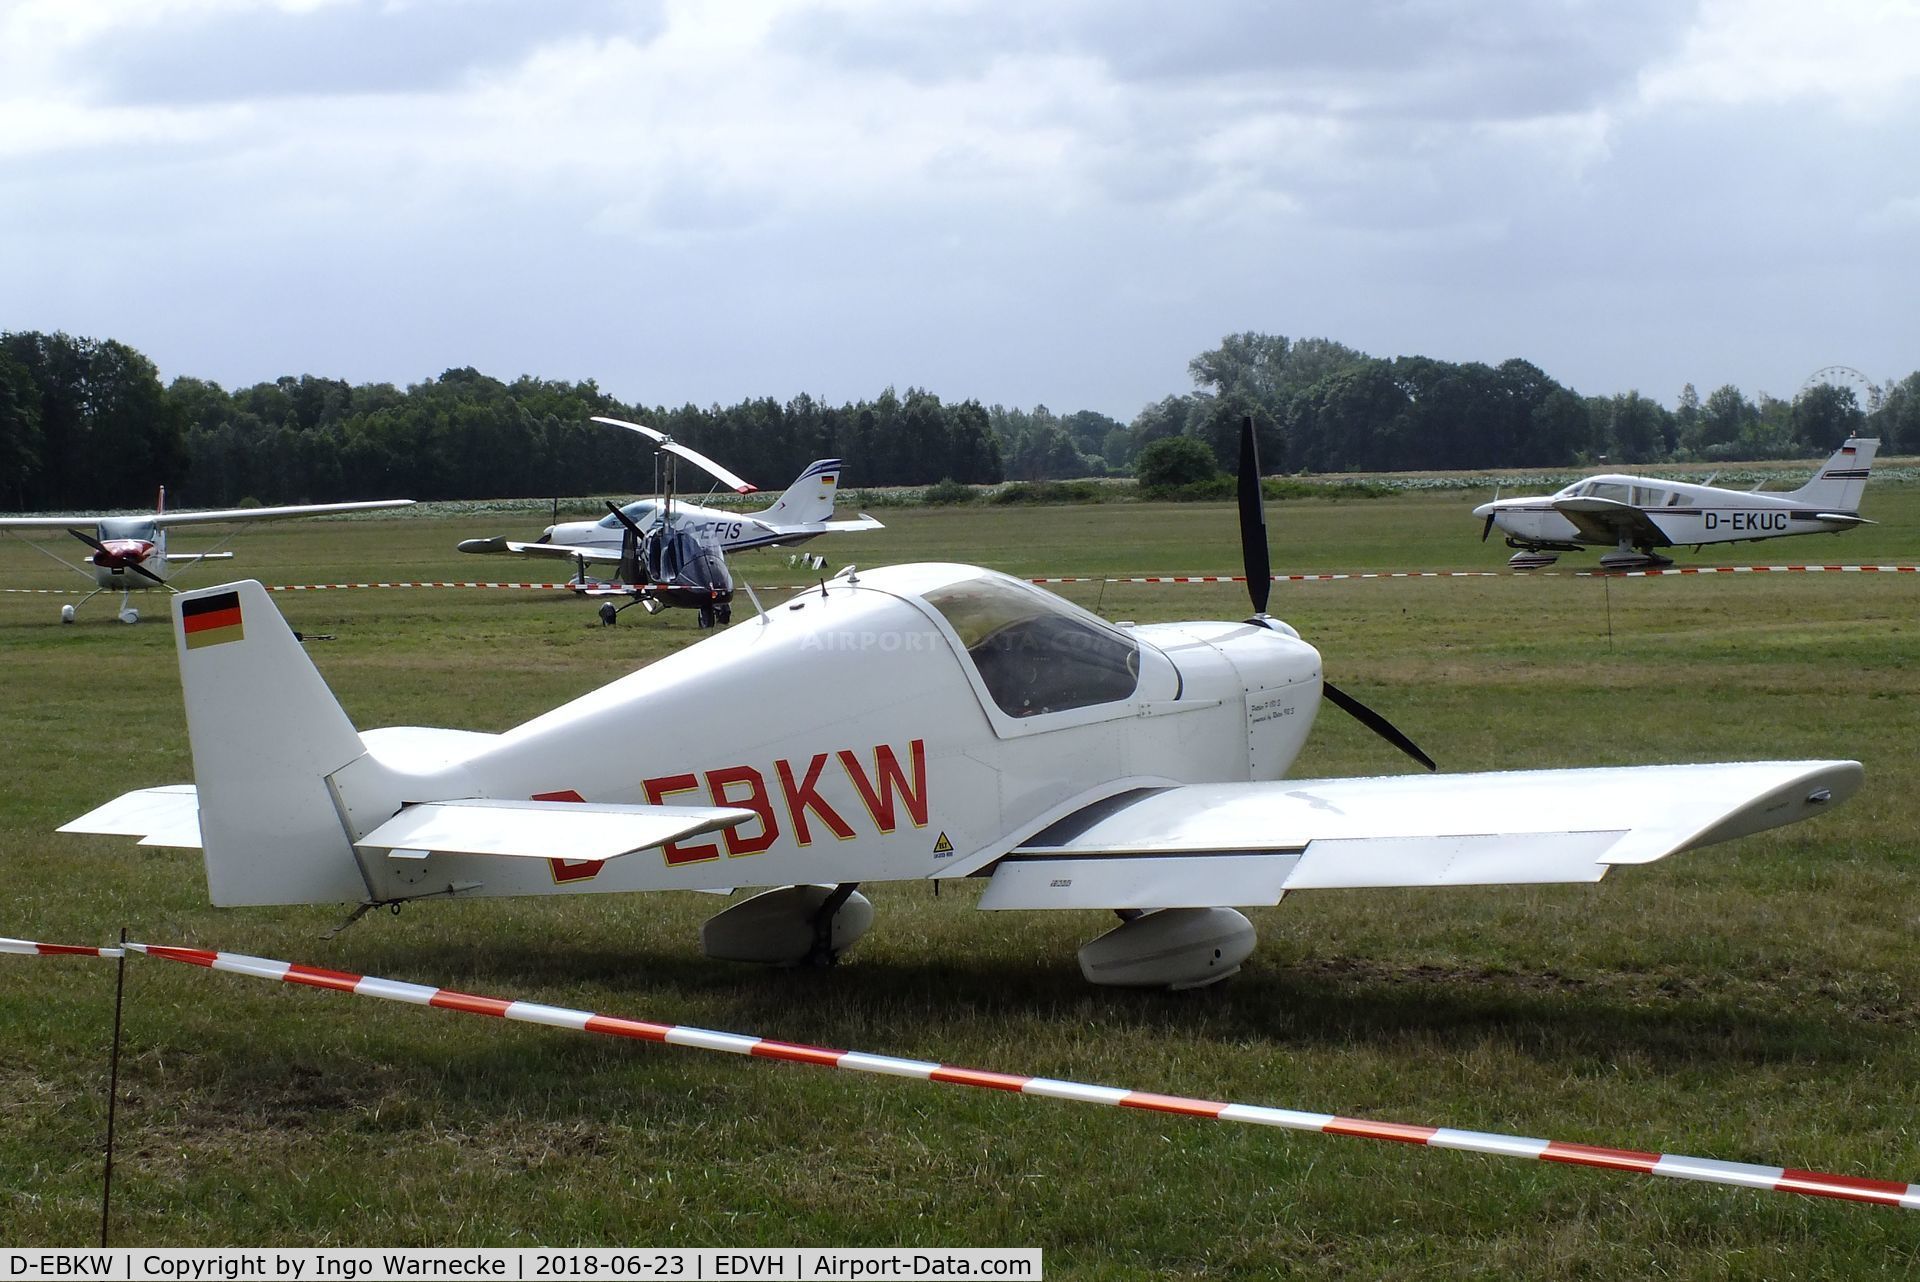 D-EBKW, Pottier P-180S C/N 155, Pottier P.180S at the 2018 OUV-Meeting at Hodenhagen airfield